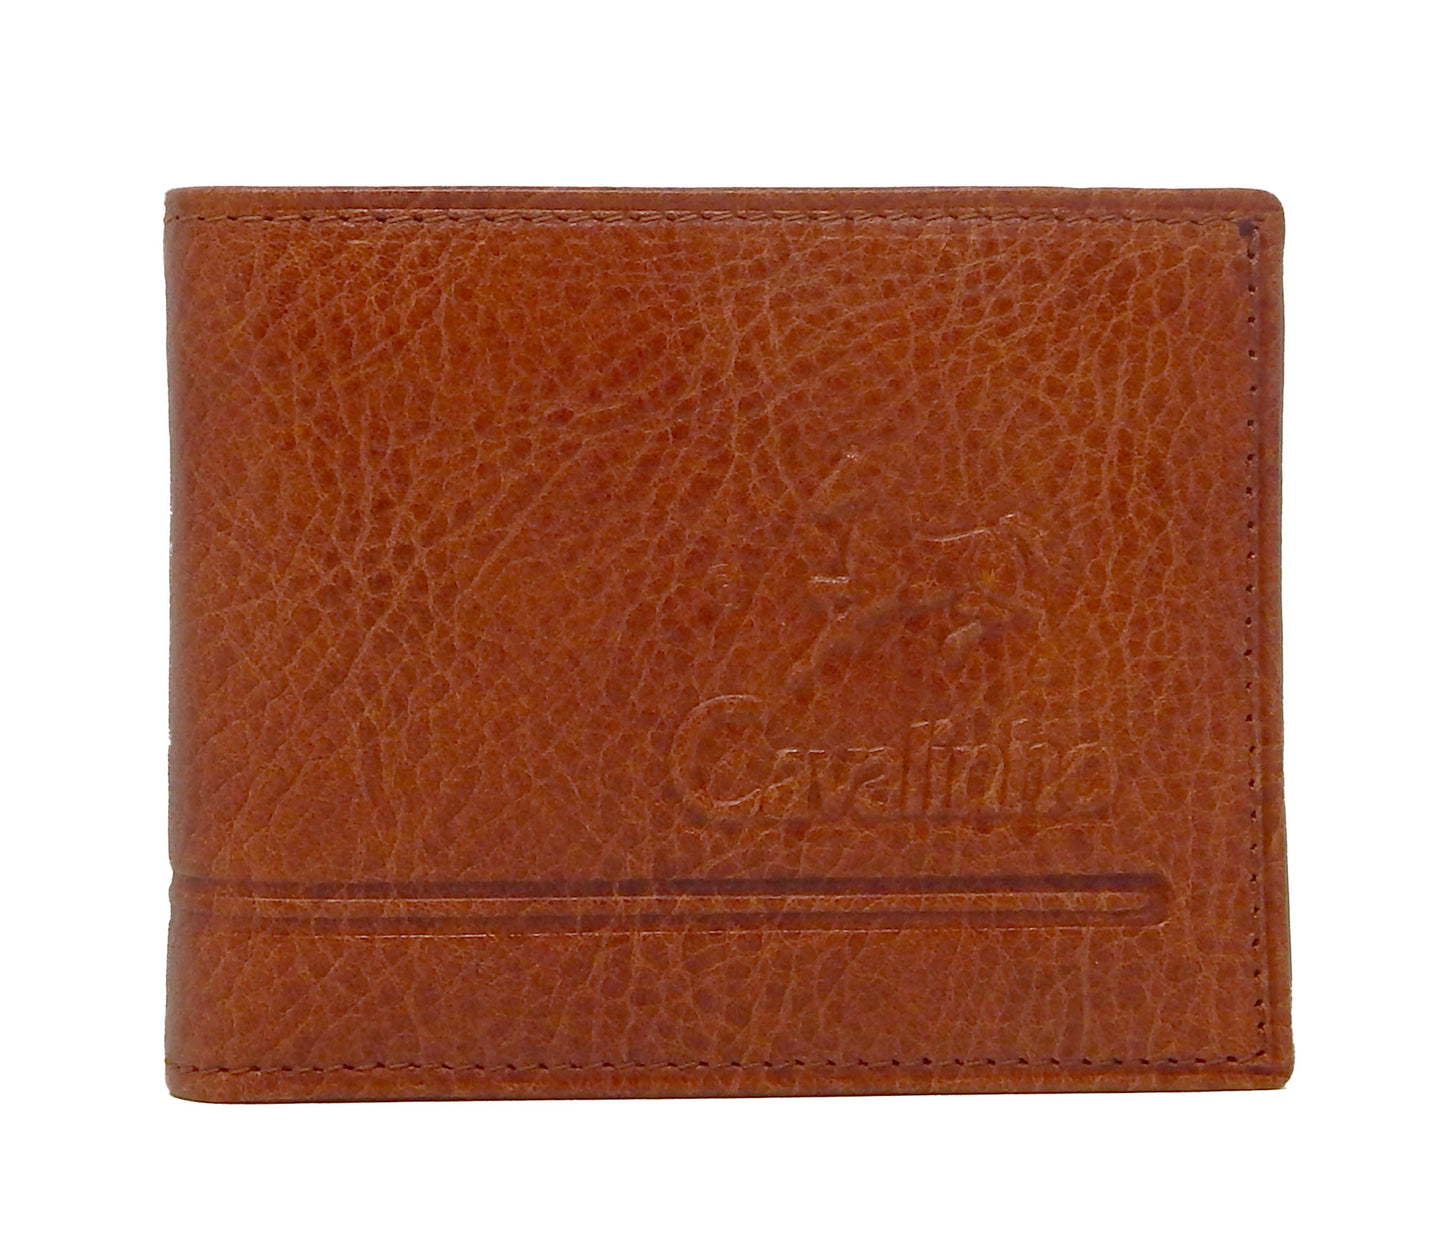 #color_ SaddleBrown | Cavalinho Men's Leather Trifold Leather Wallet - SaddleBrown - 28160529.13.99_1